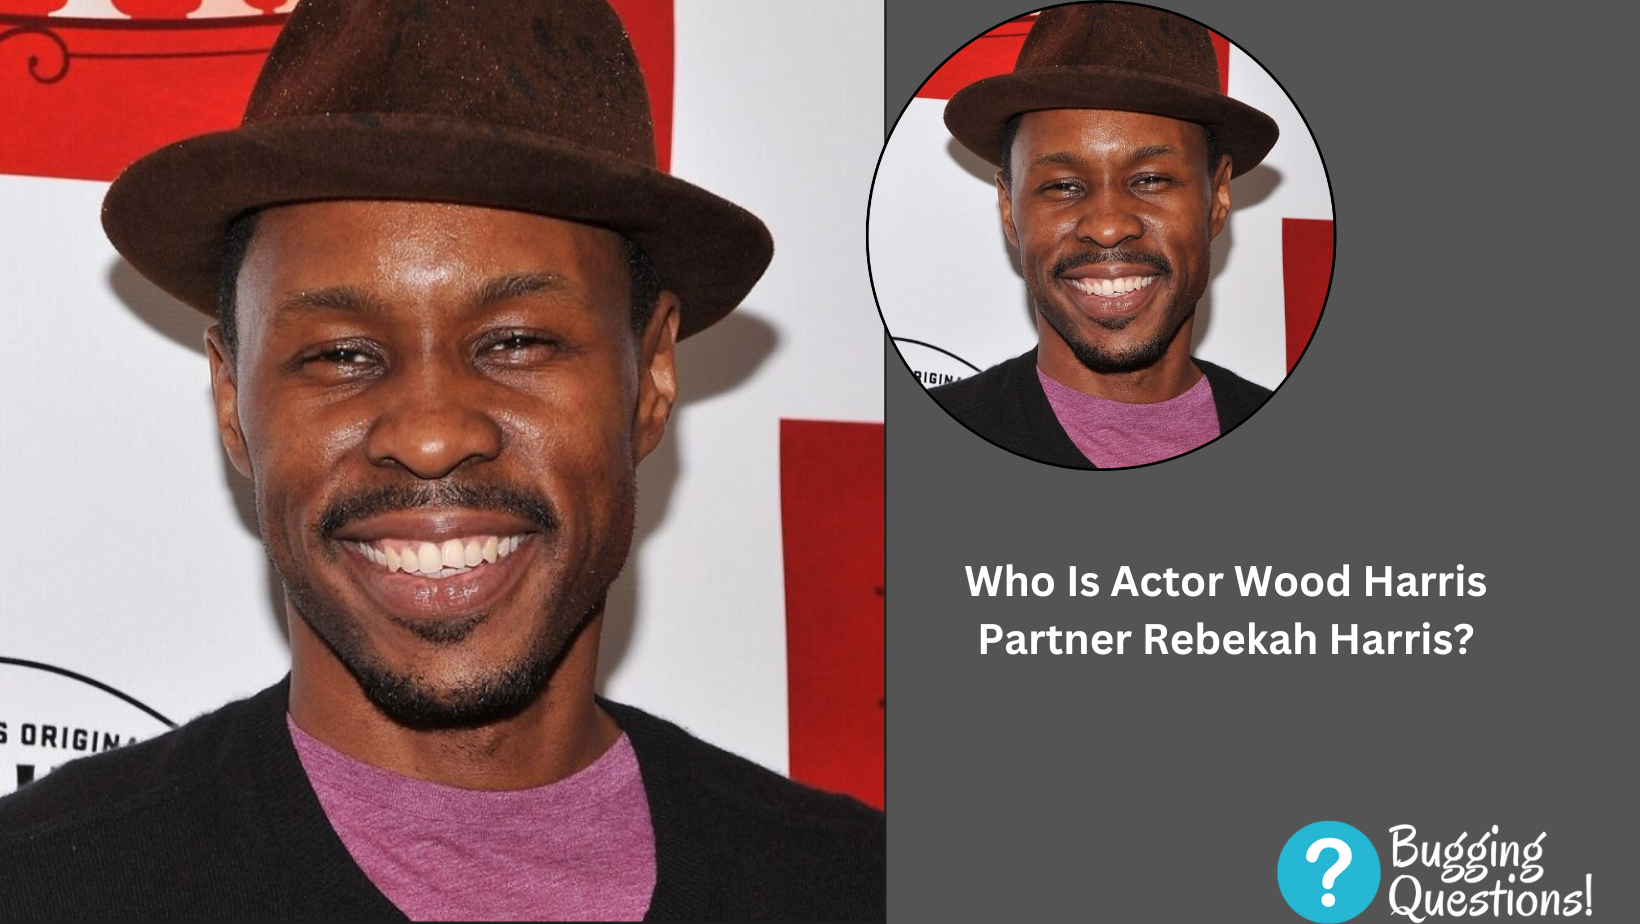 Who Is Actor Wood Harris Partner Rebekah Harris?